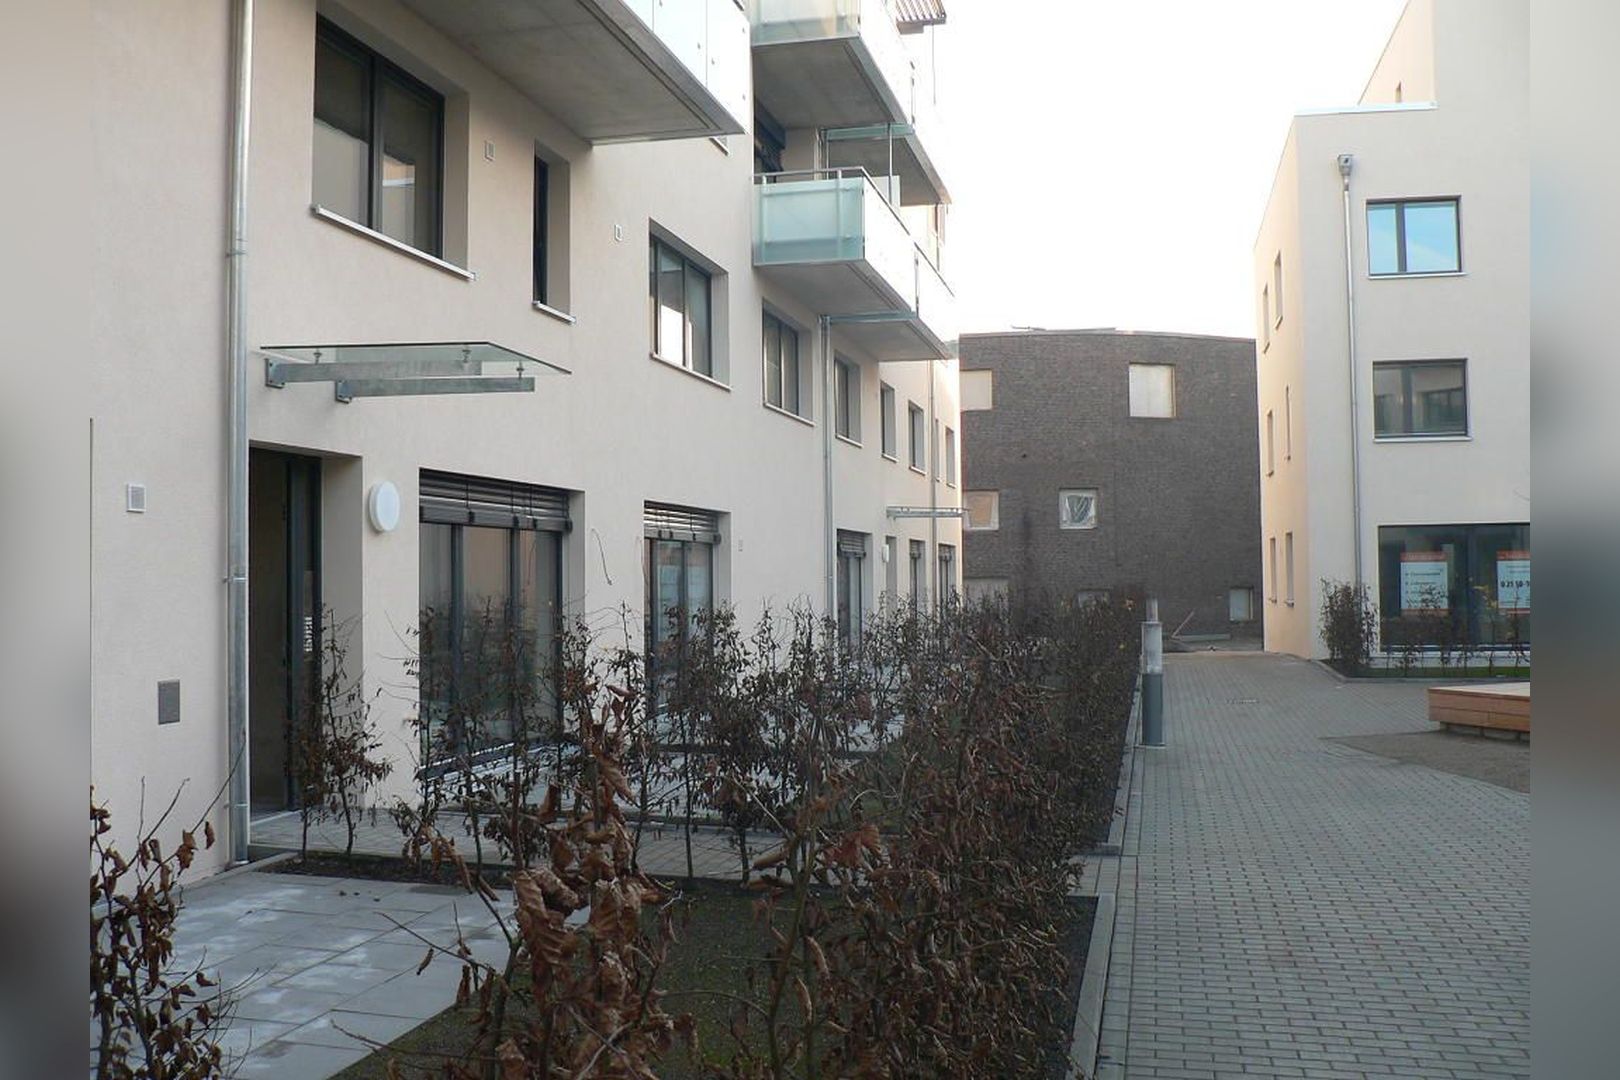 Immobilie Nr.Hilden 016 - 3-Raum-Wohnung mit Süd-West-Balkon, Aufzug und Topp-Aufteilung! - Bild 6.jpg